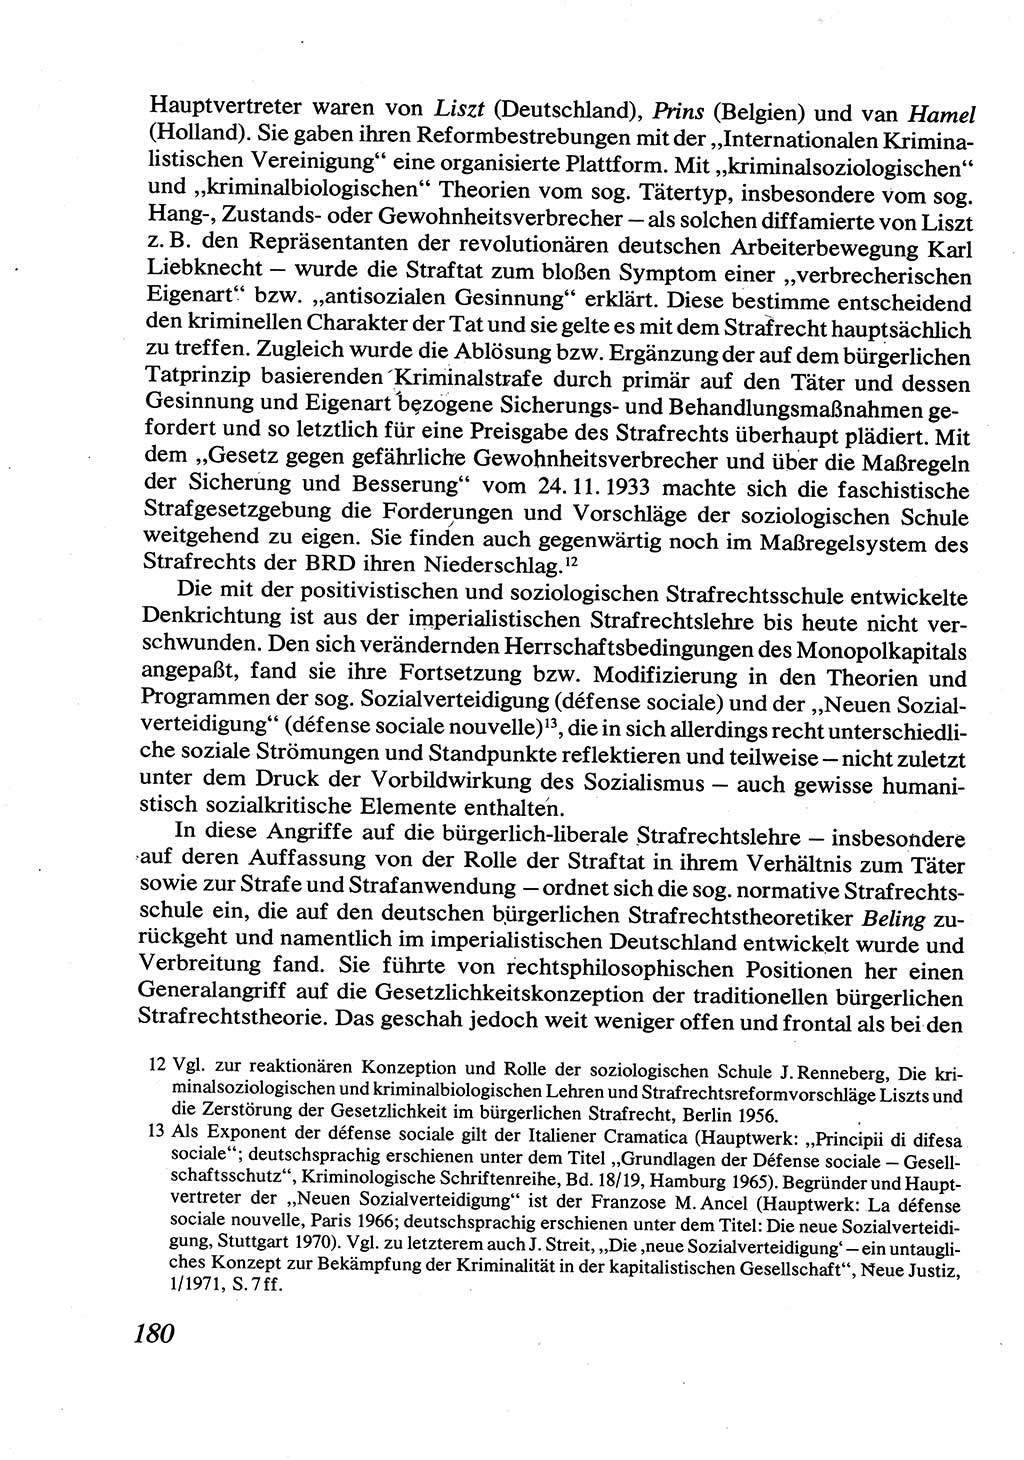 Strafrecht [Deutsche Demokratische Republik (DDR)], Allgemeiner Teil, Lehrbuch 1976, Seite 180 (Strafr. DDR AT Lb. 1976, S. 180)